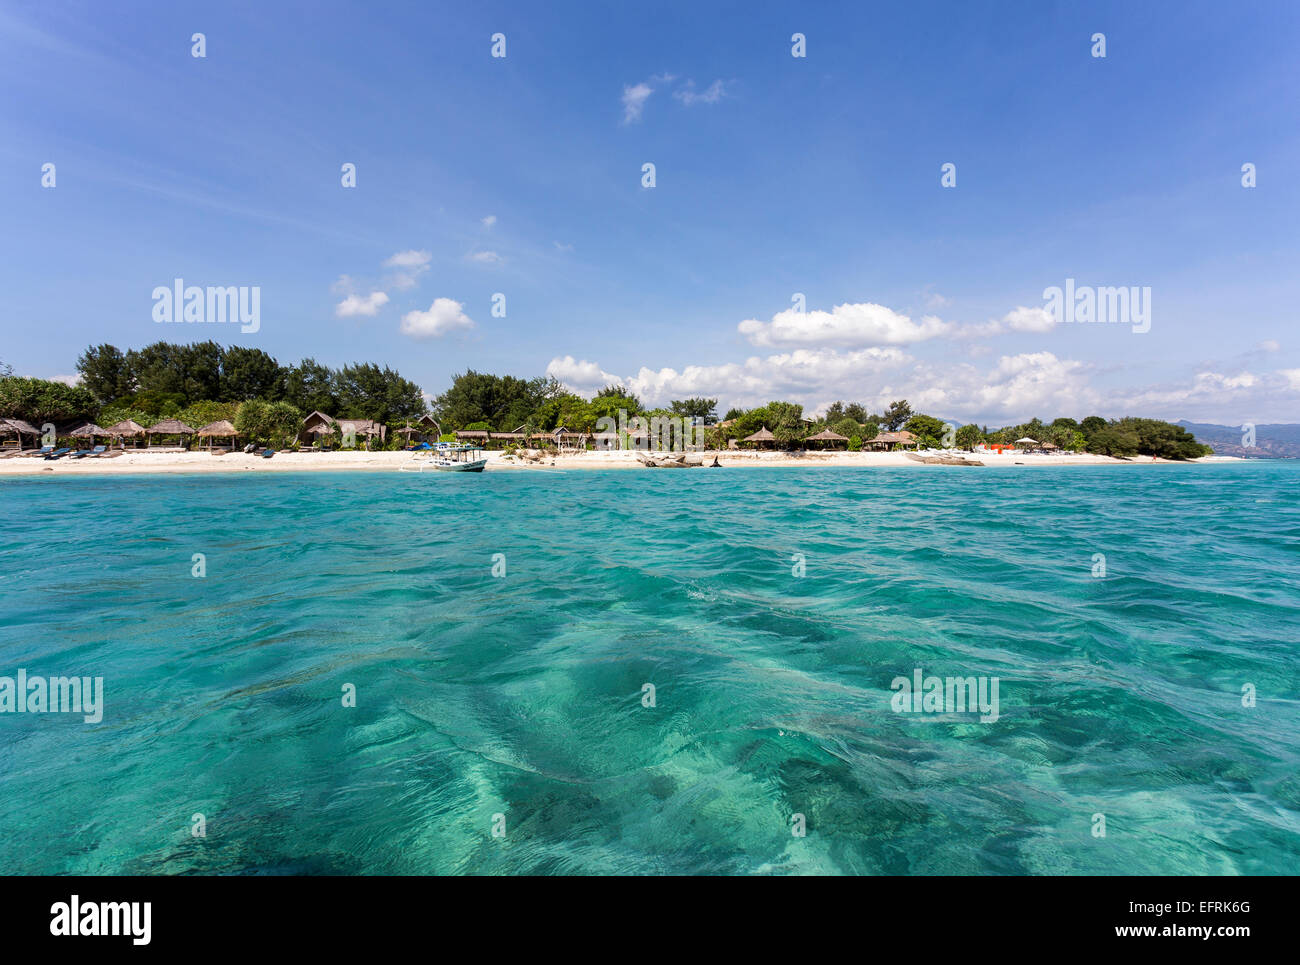 Gili Islands, Indonesia, Asia, Stock Photo